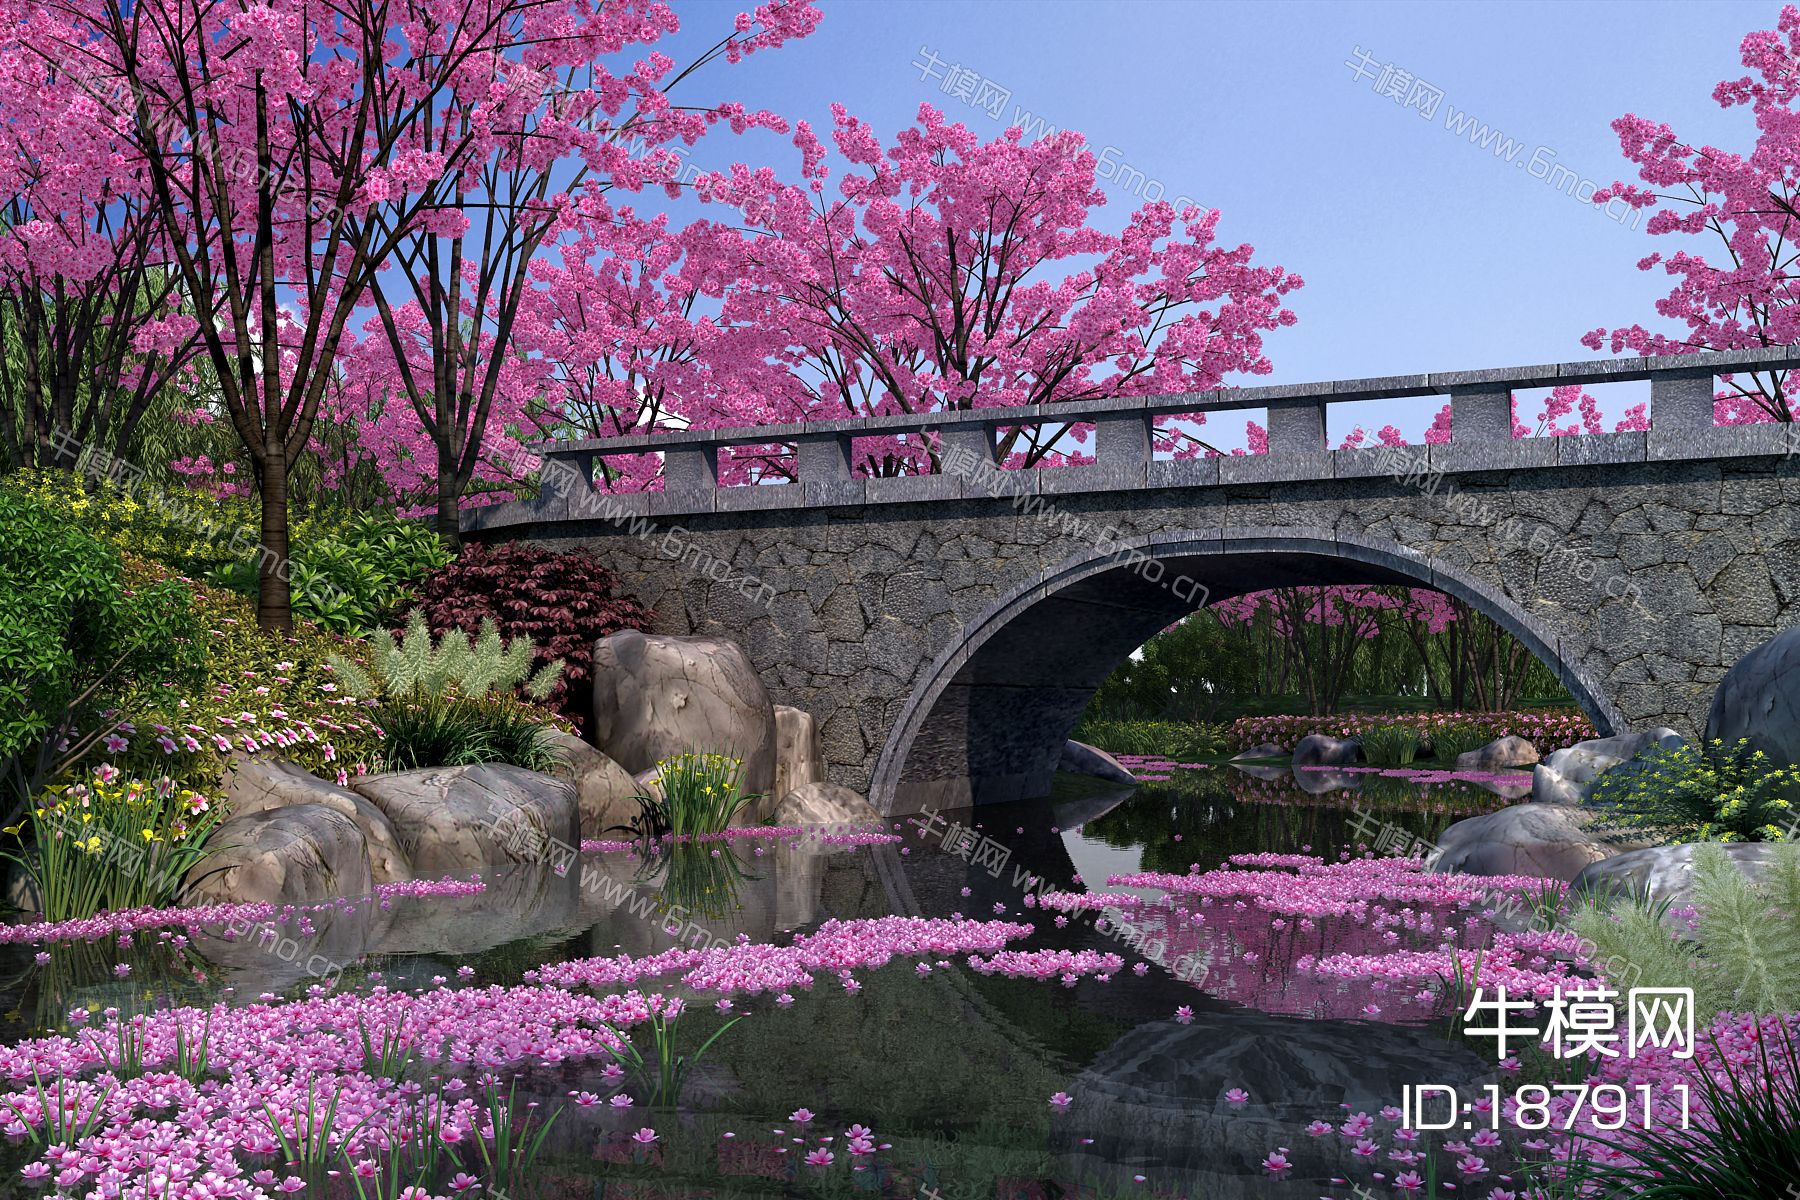 中式园林景观 樱花谷 中式园林 公园 花园 河岸景观 景观组合 景观桥